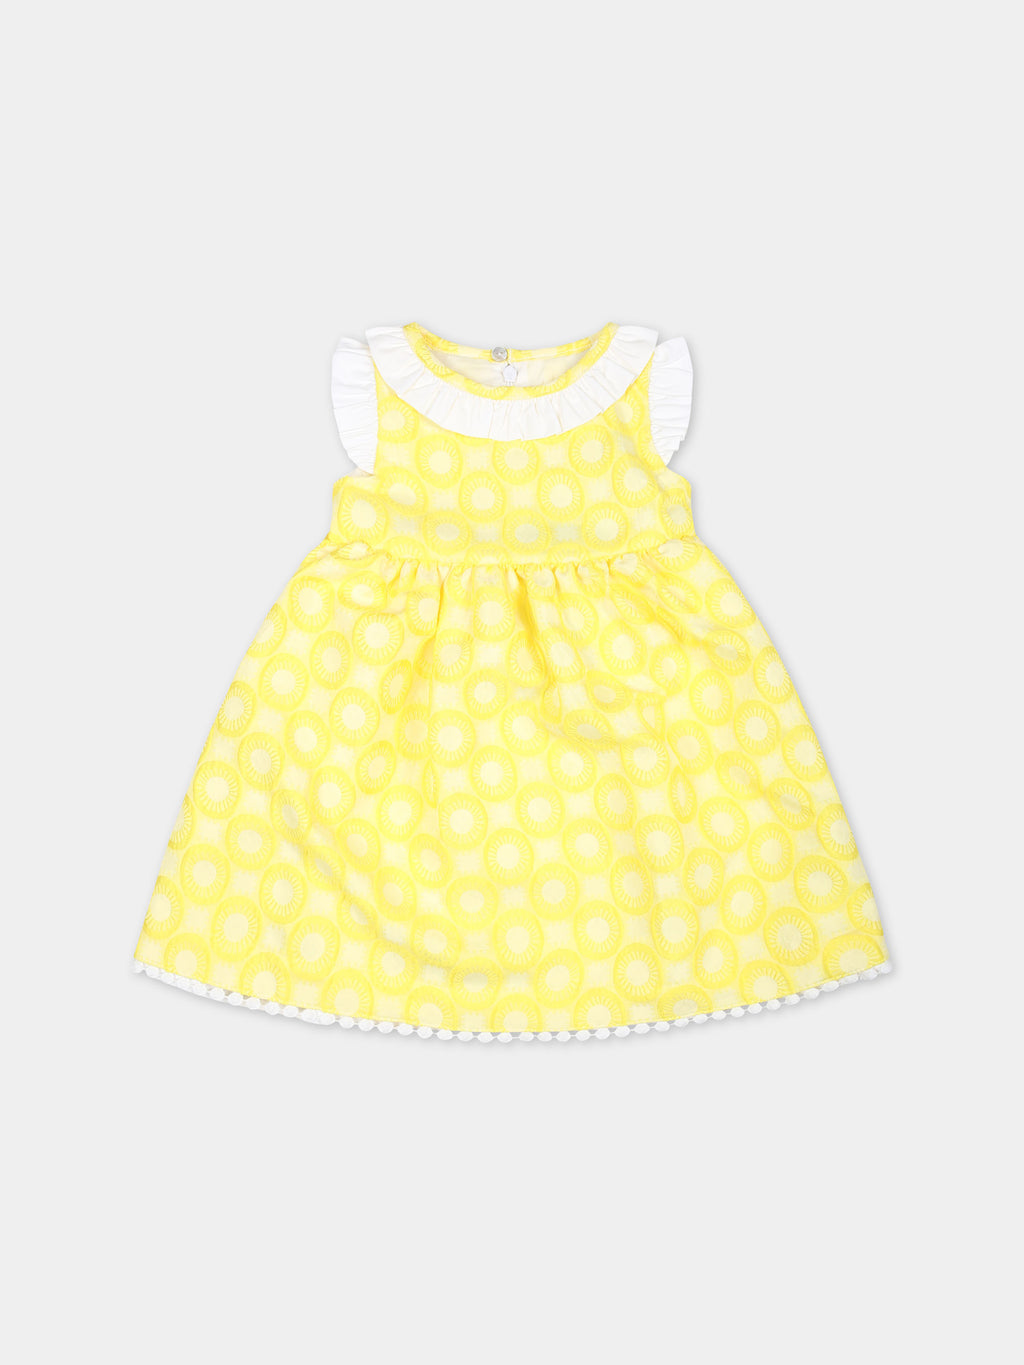 Robe jaune pour bébé fille avec broderie